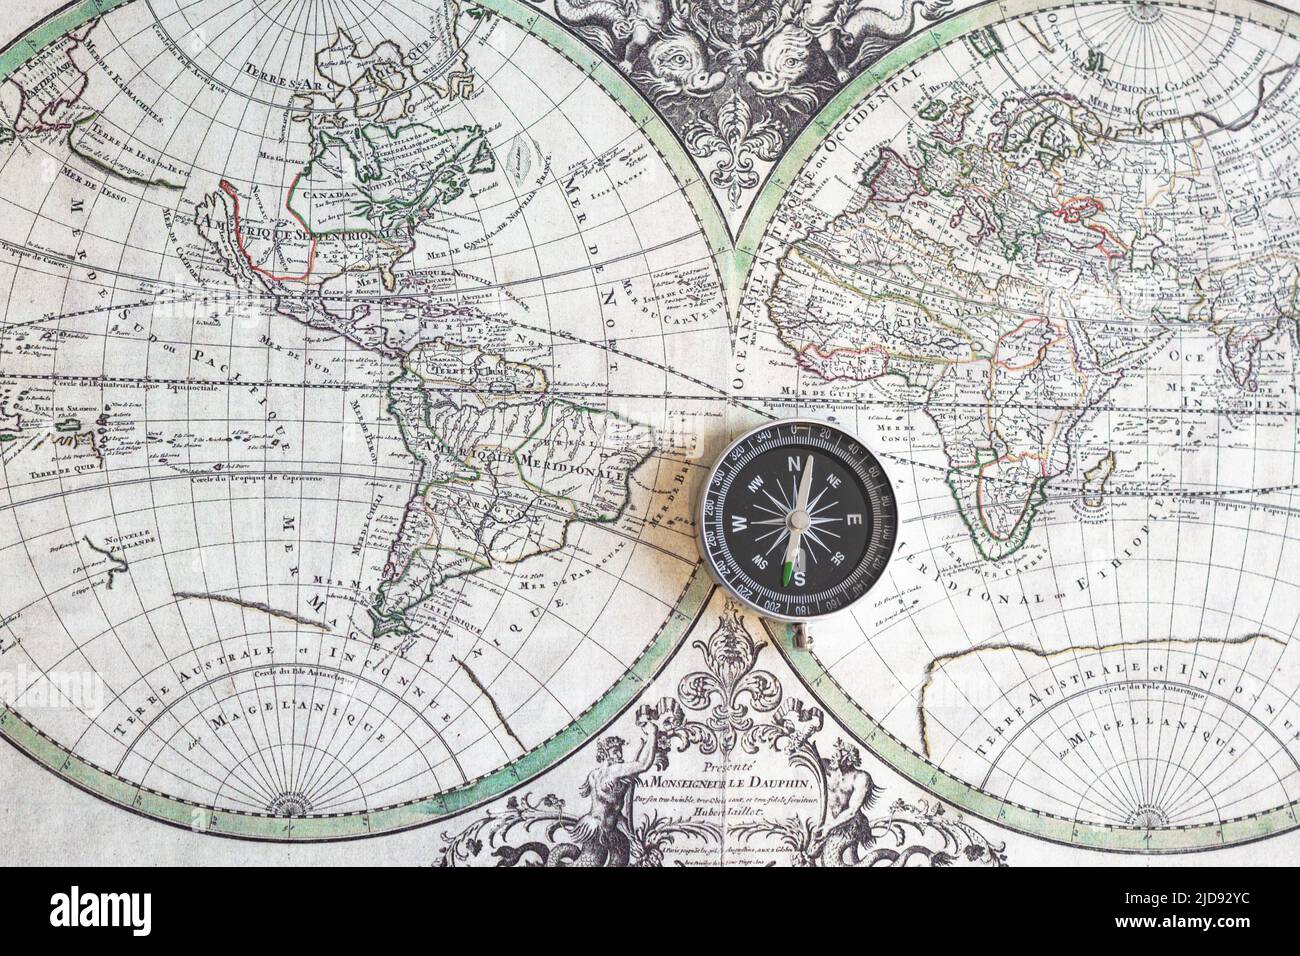 La boussole se trouve sur une carte du monde antique Banque D'Images